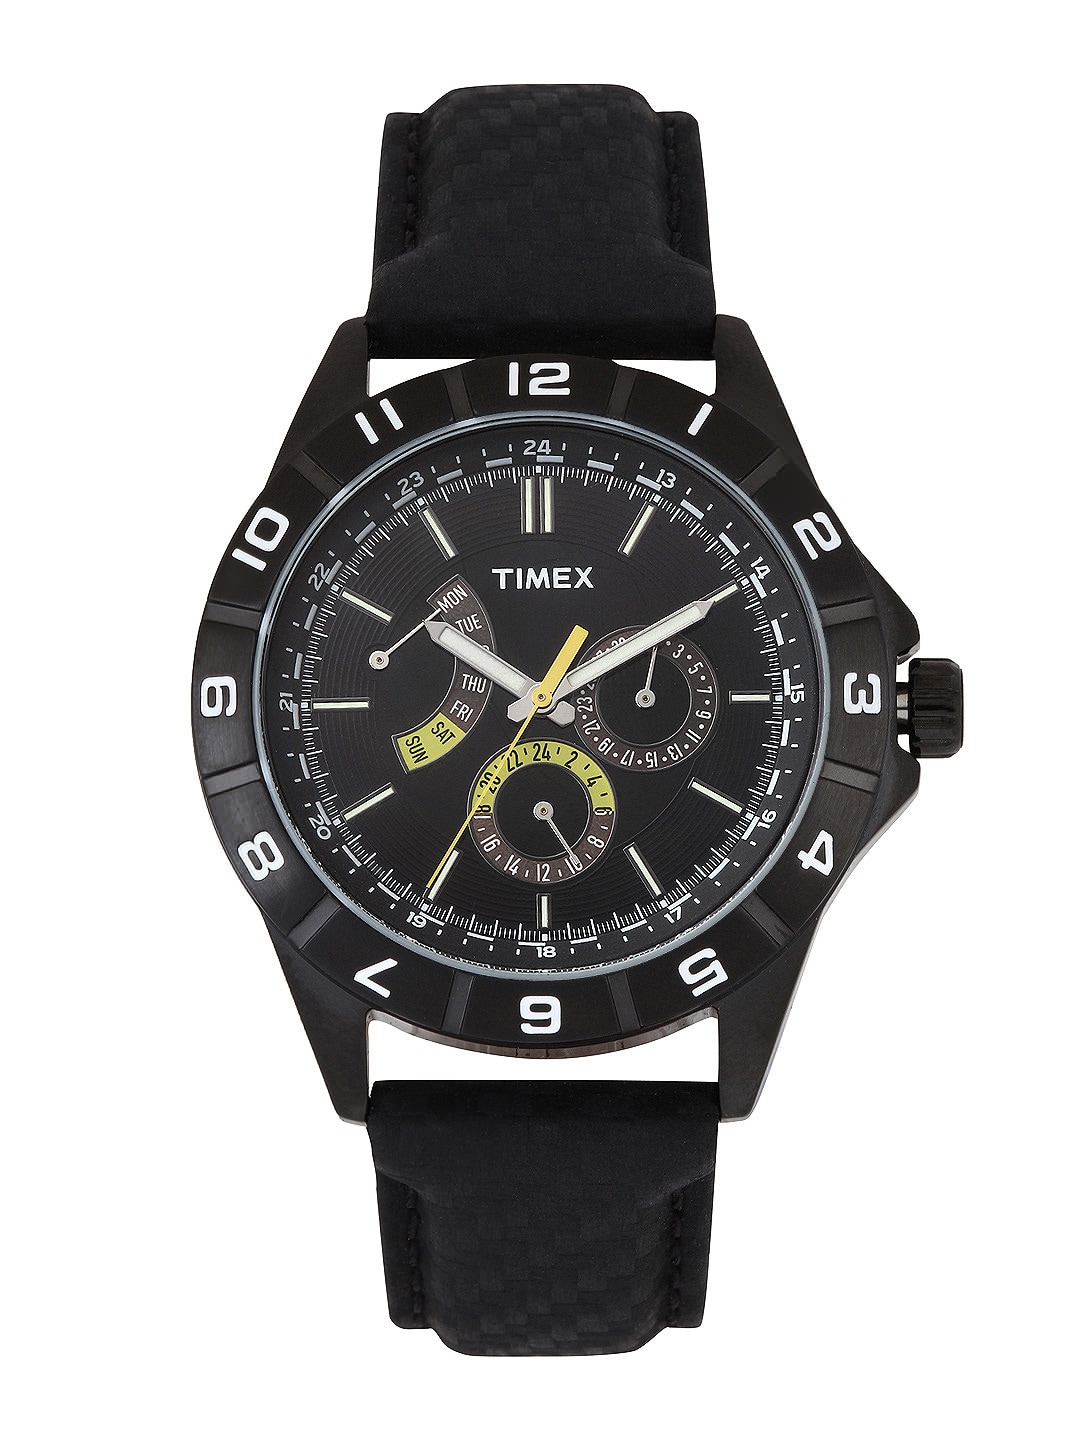 Timex Men Black Dial Watch T2N520